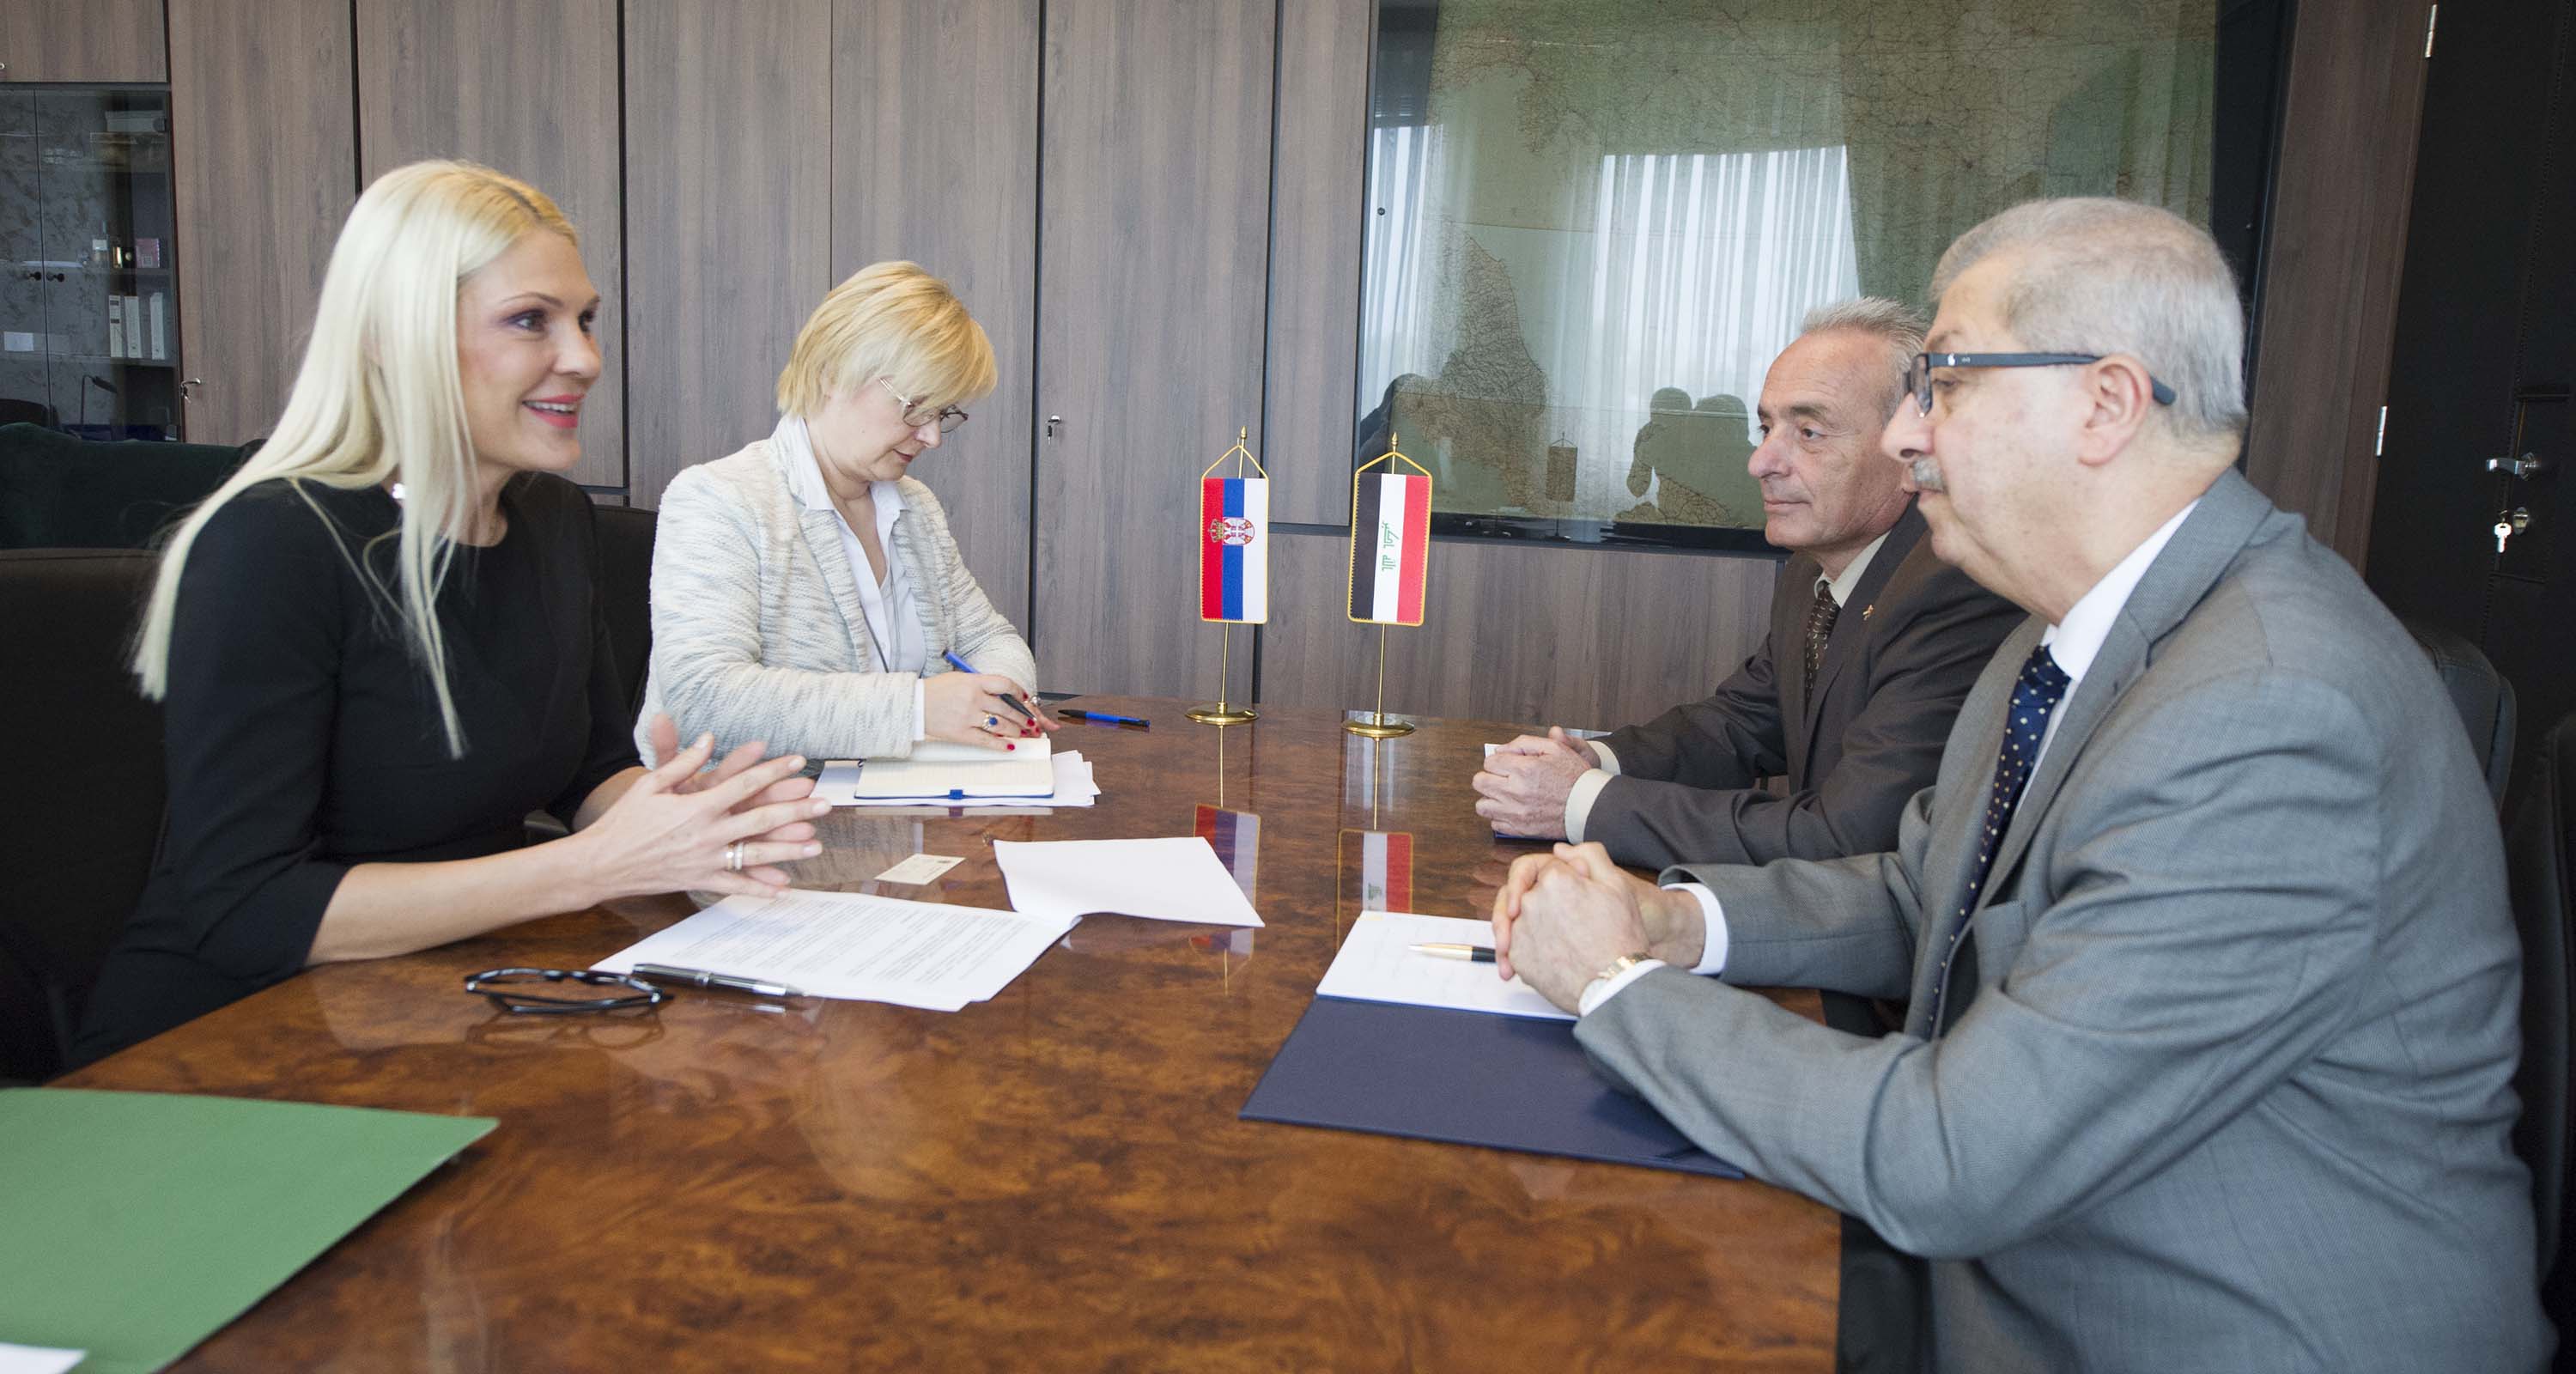 Državni sekretar Popović Ivković istakla je da kandidatura tzv. „Kosova“ za članstvo u Interpolu predstavlja ozbiljan presedan